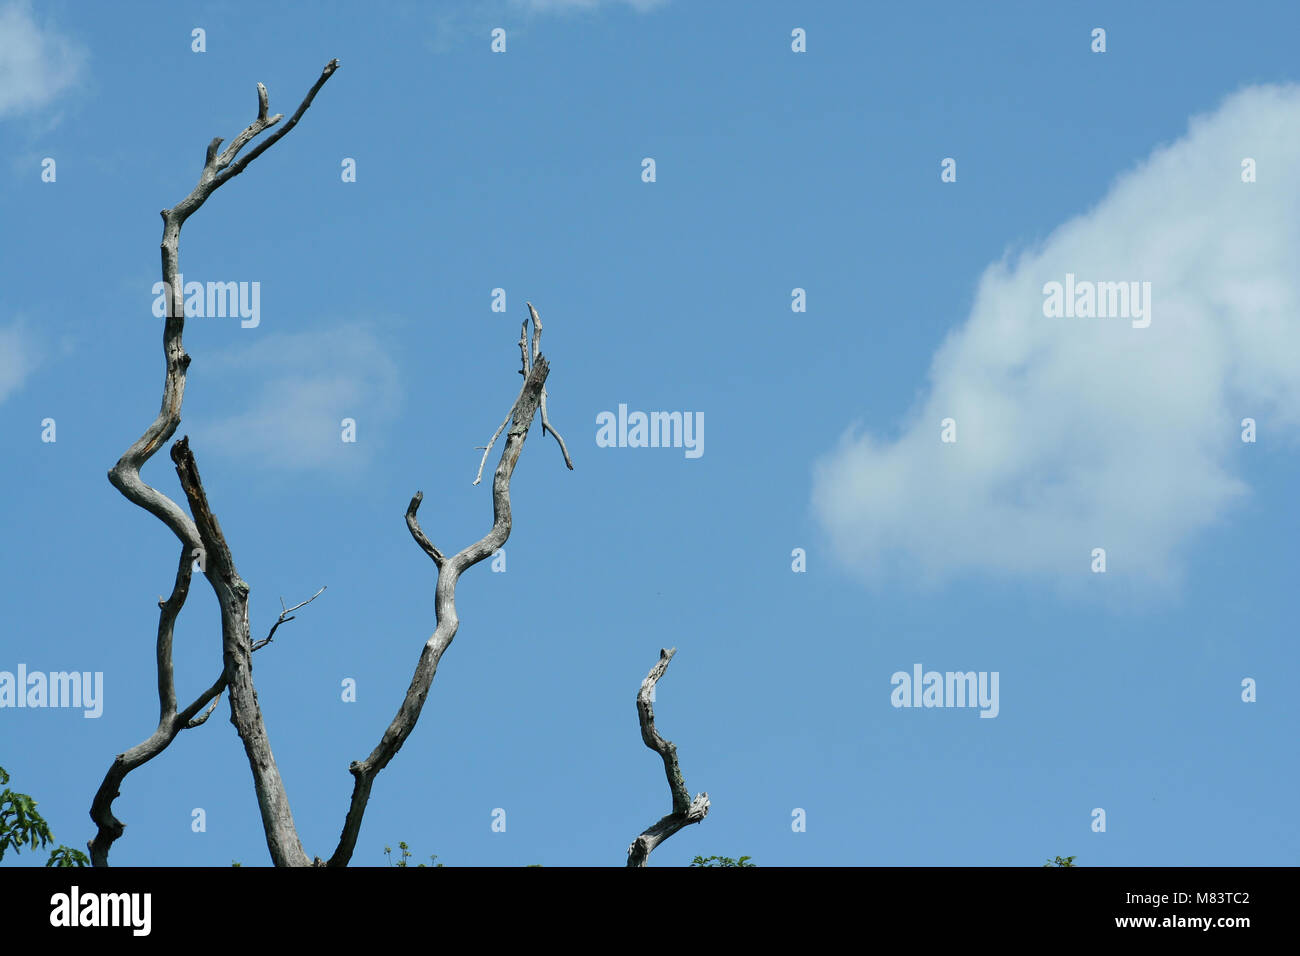 Dead Tree limbs against a blue sky Stock Photo